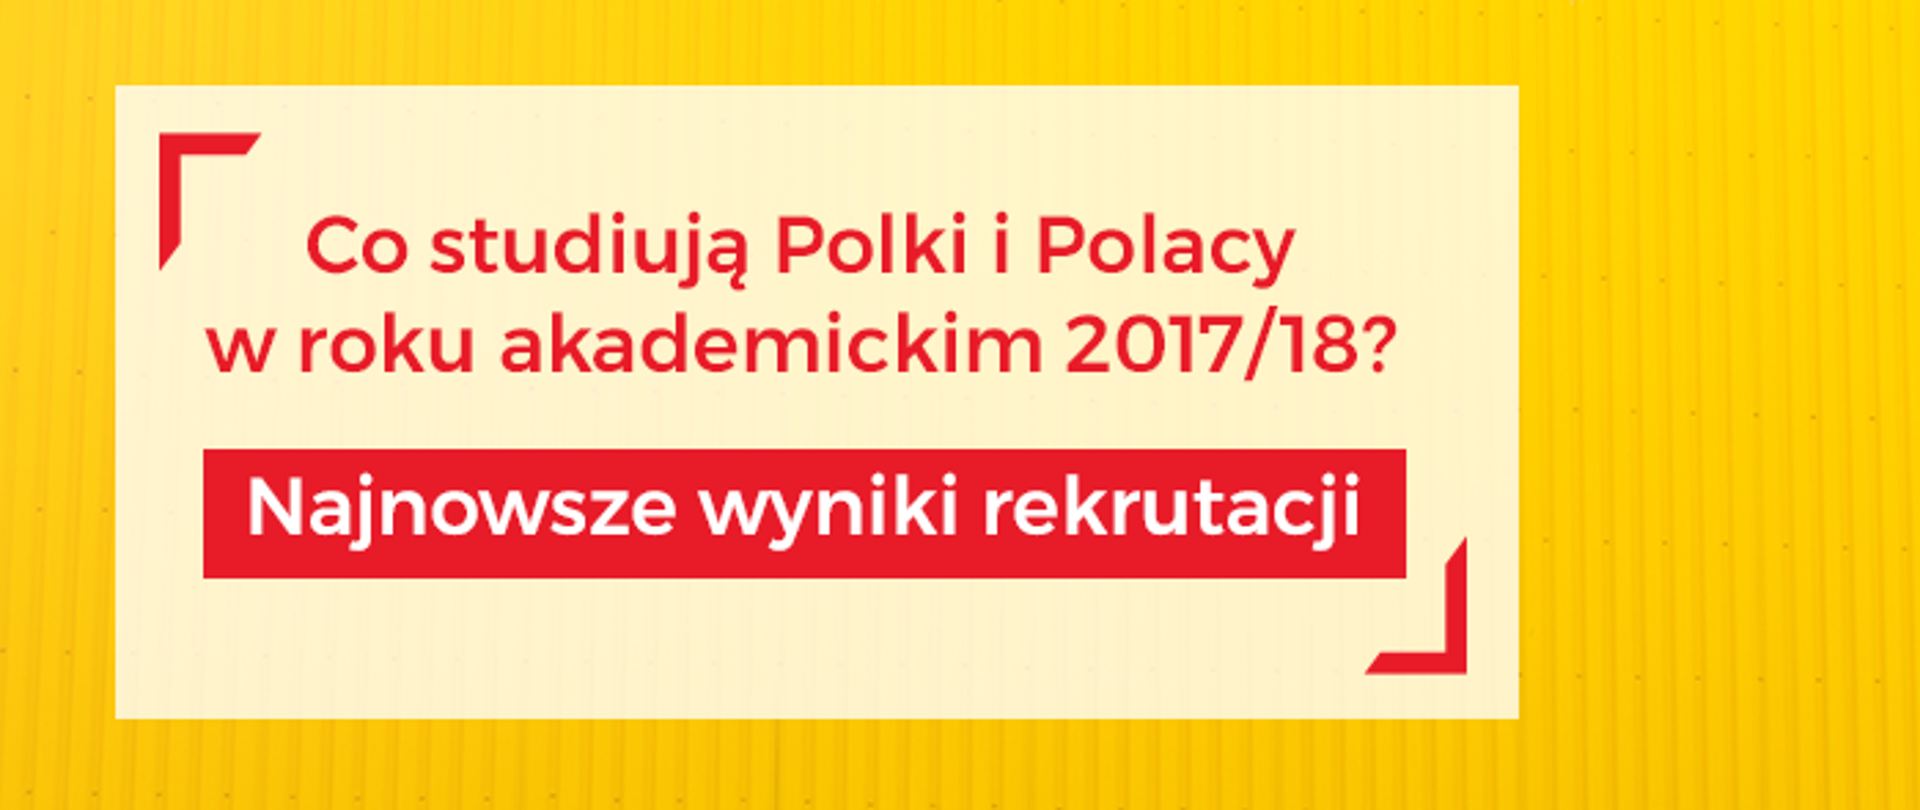 Grafika - na żółtym tle napis Co studiują Polki i Polacy w roku akademickim 2017/18?